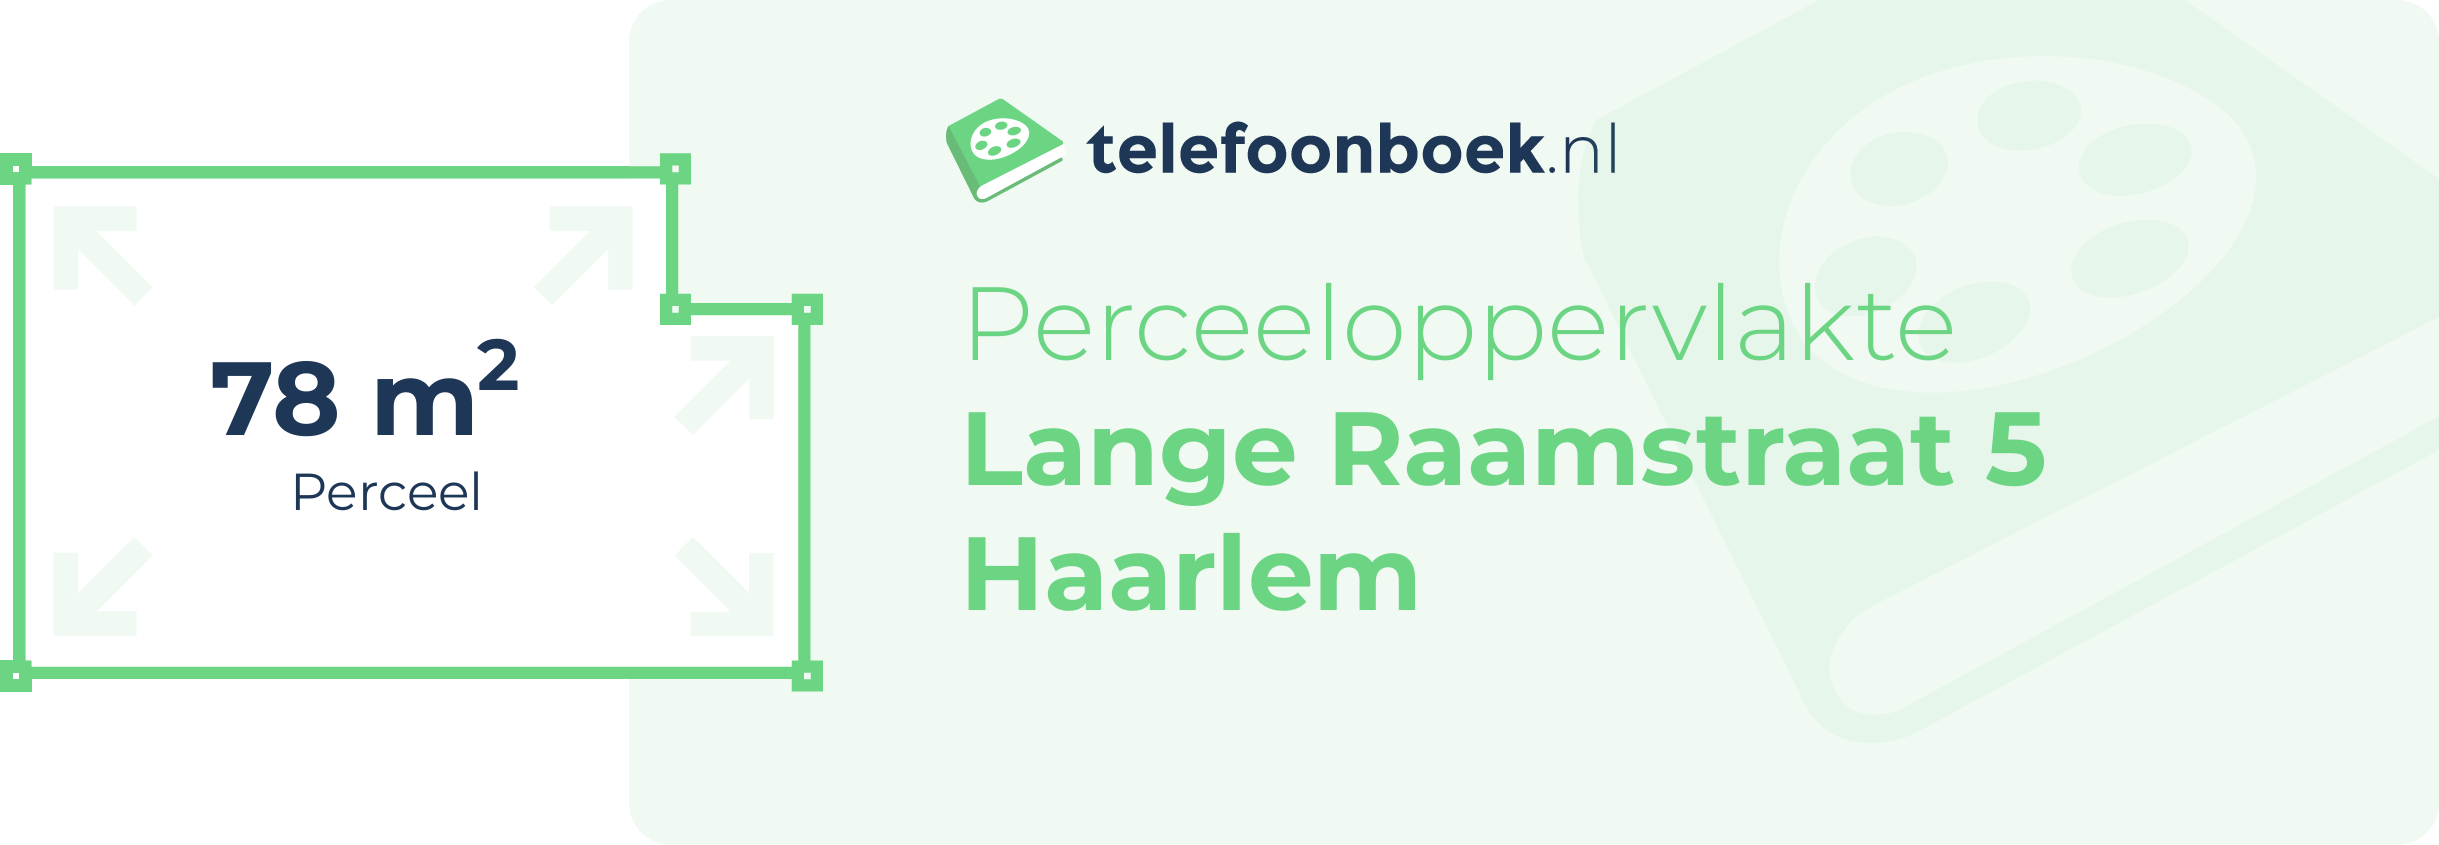 Perceeloppervlakte Lange Raamstraat 5 Haarlem